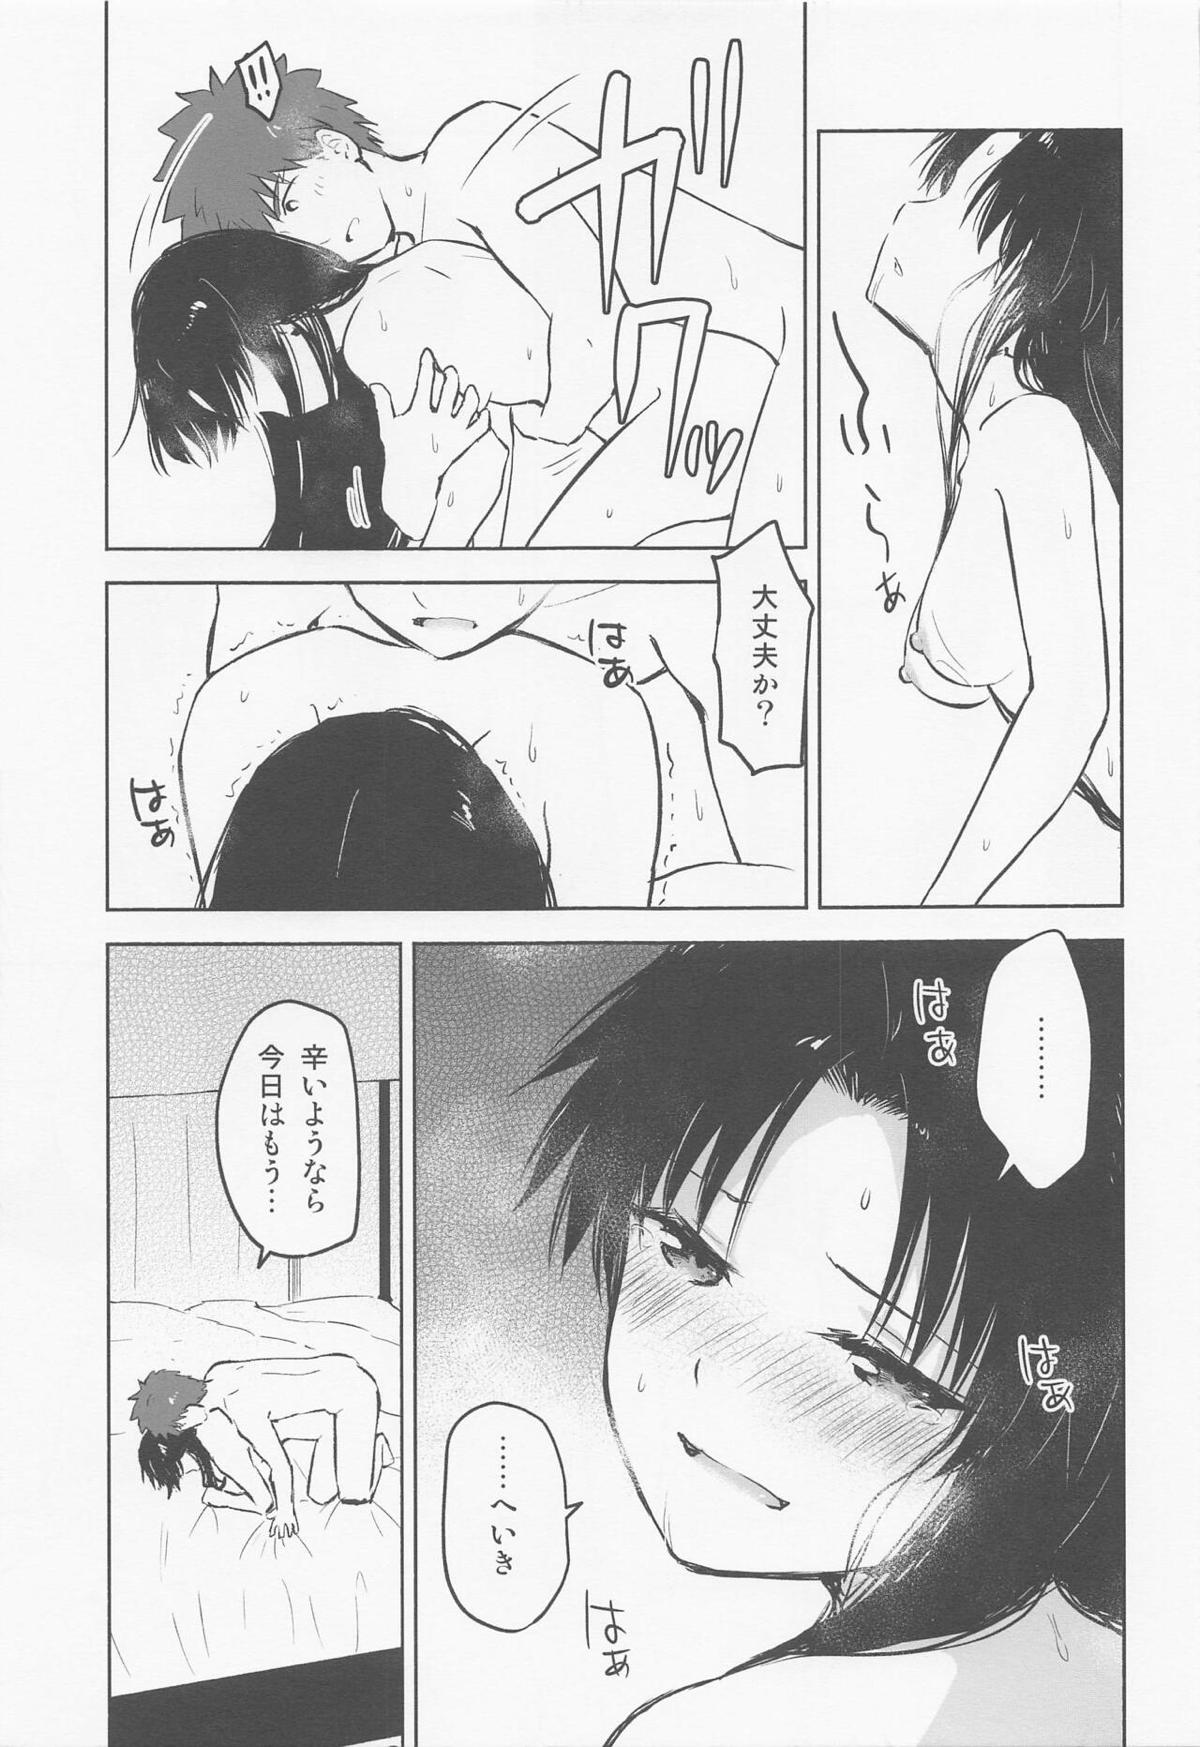 【C101】凛の家に泊まりに来た士郎がついに初体験して、何度もセックスして愛し合う♡【Fate/stay night】